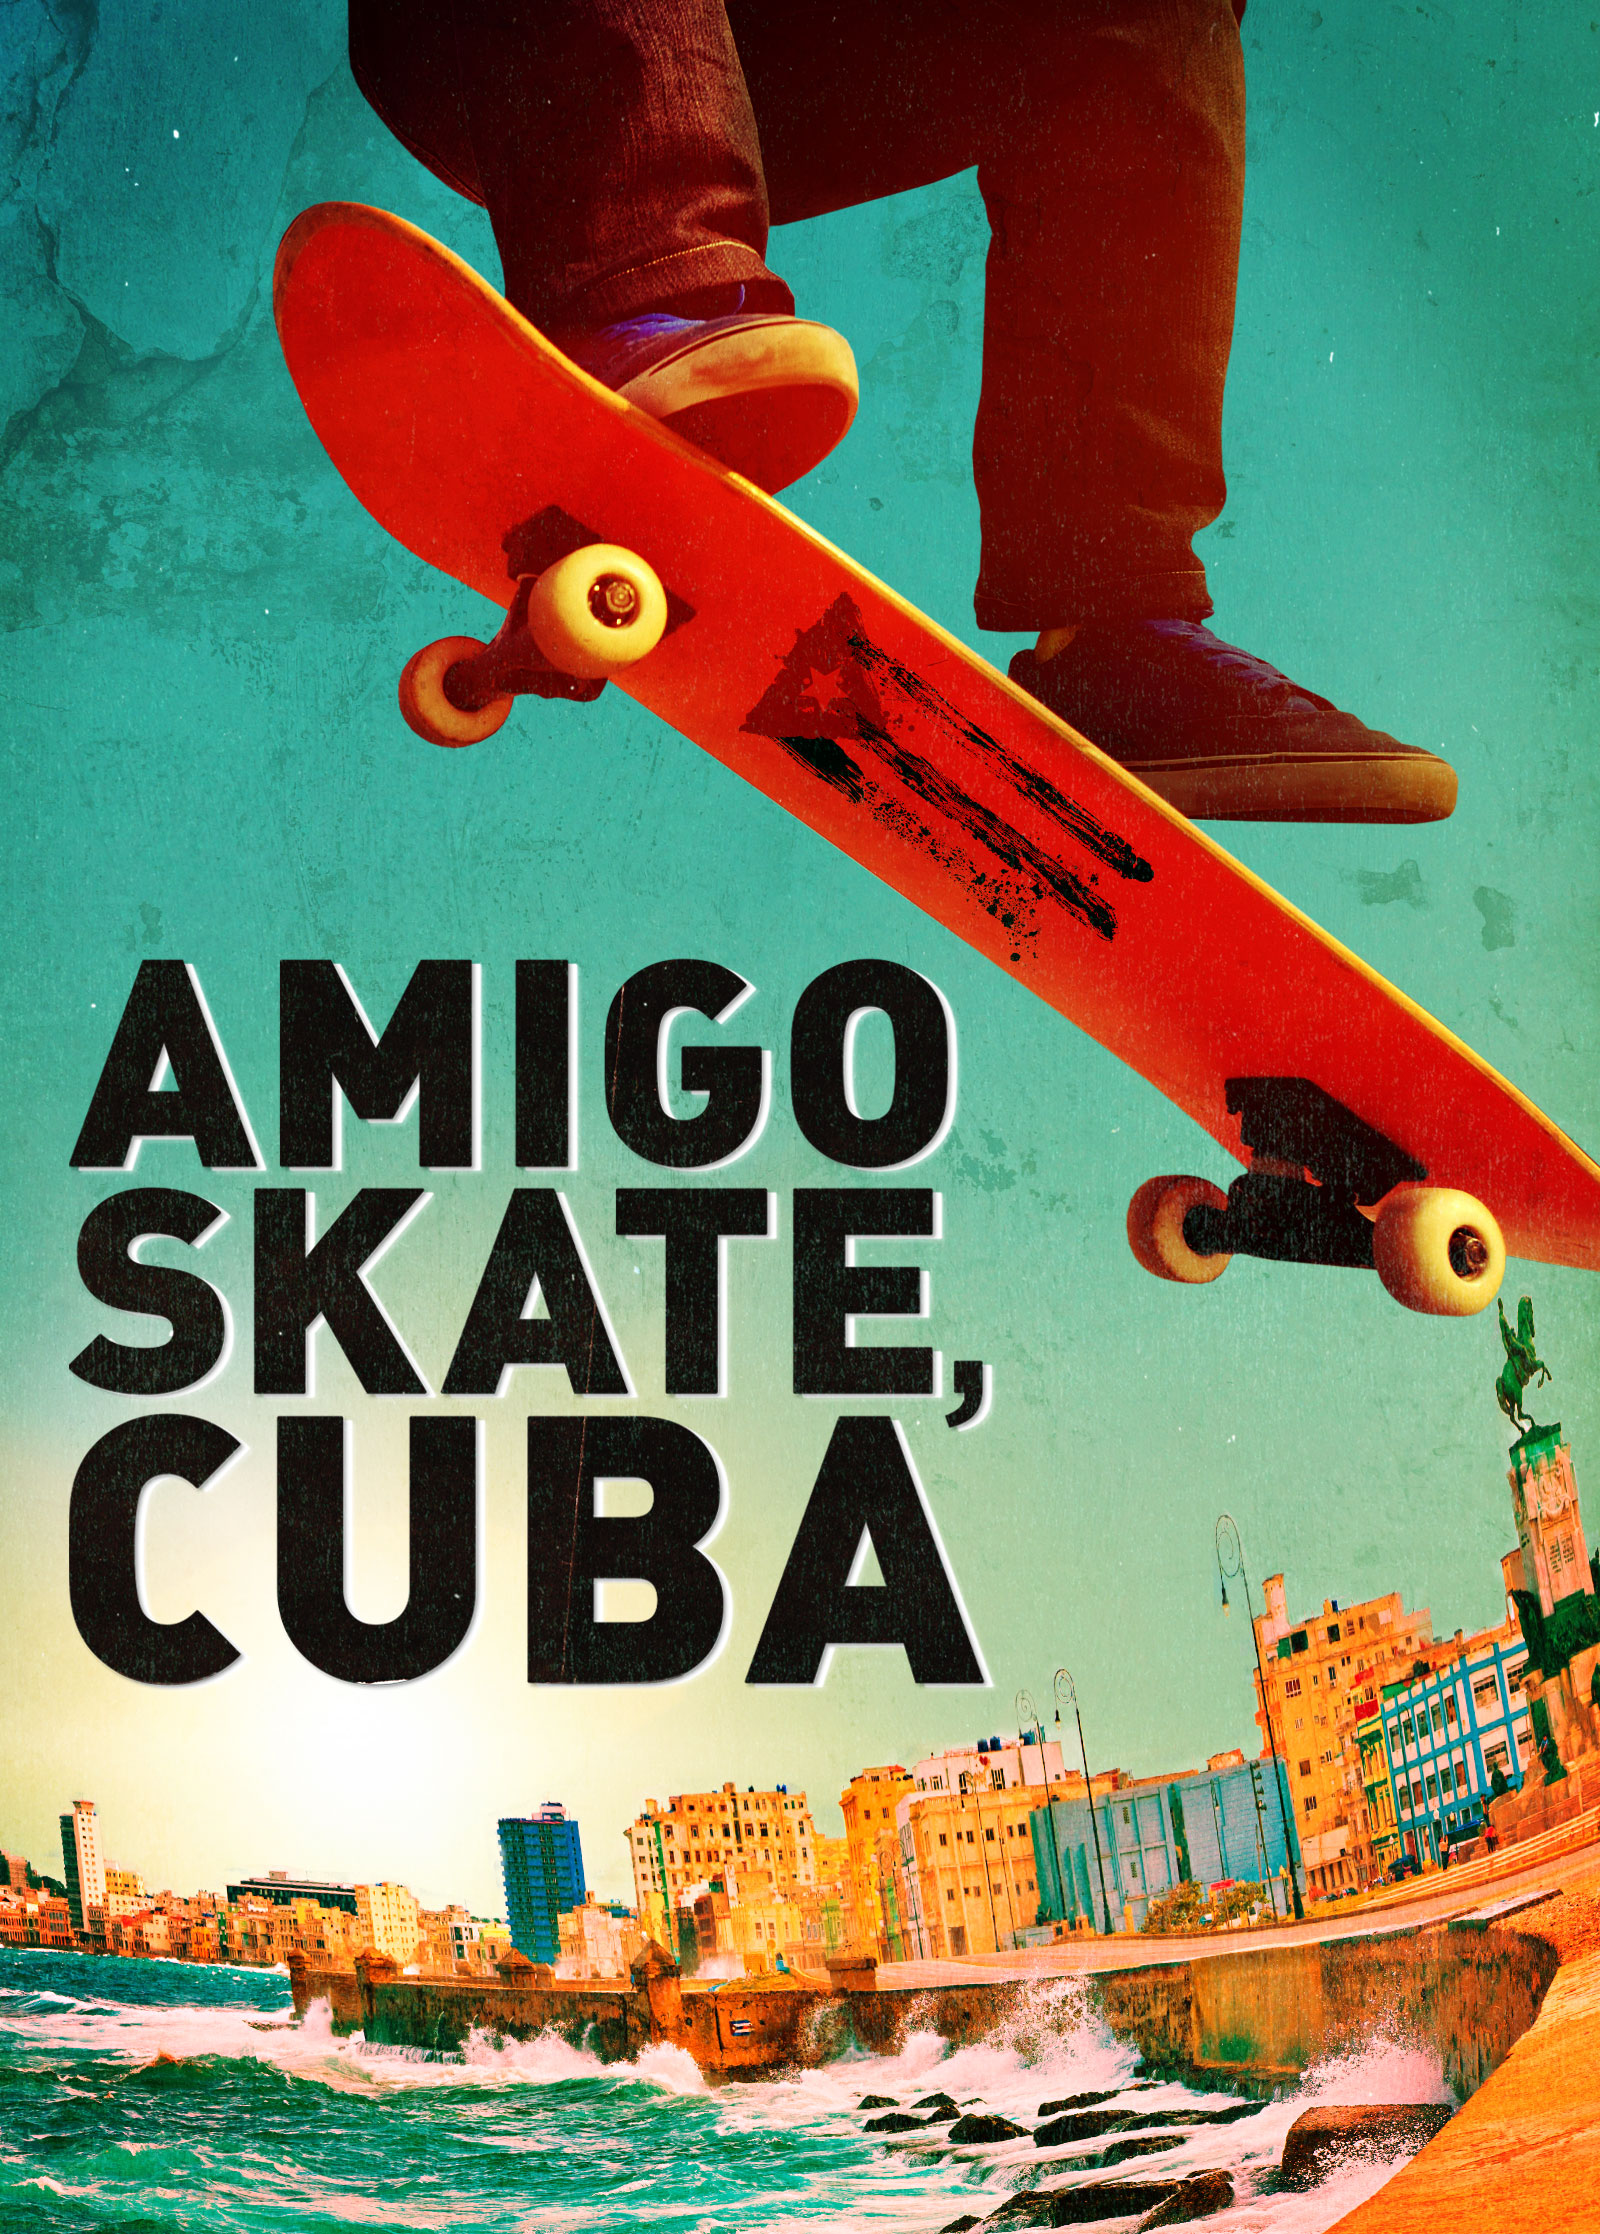 Amigo Skate, Cuba (2018)